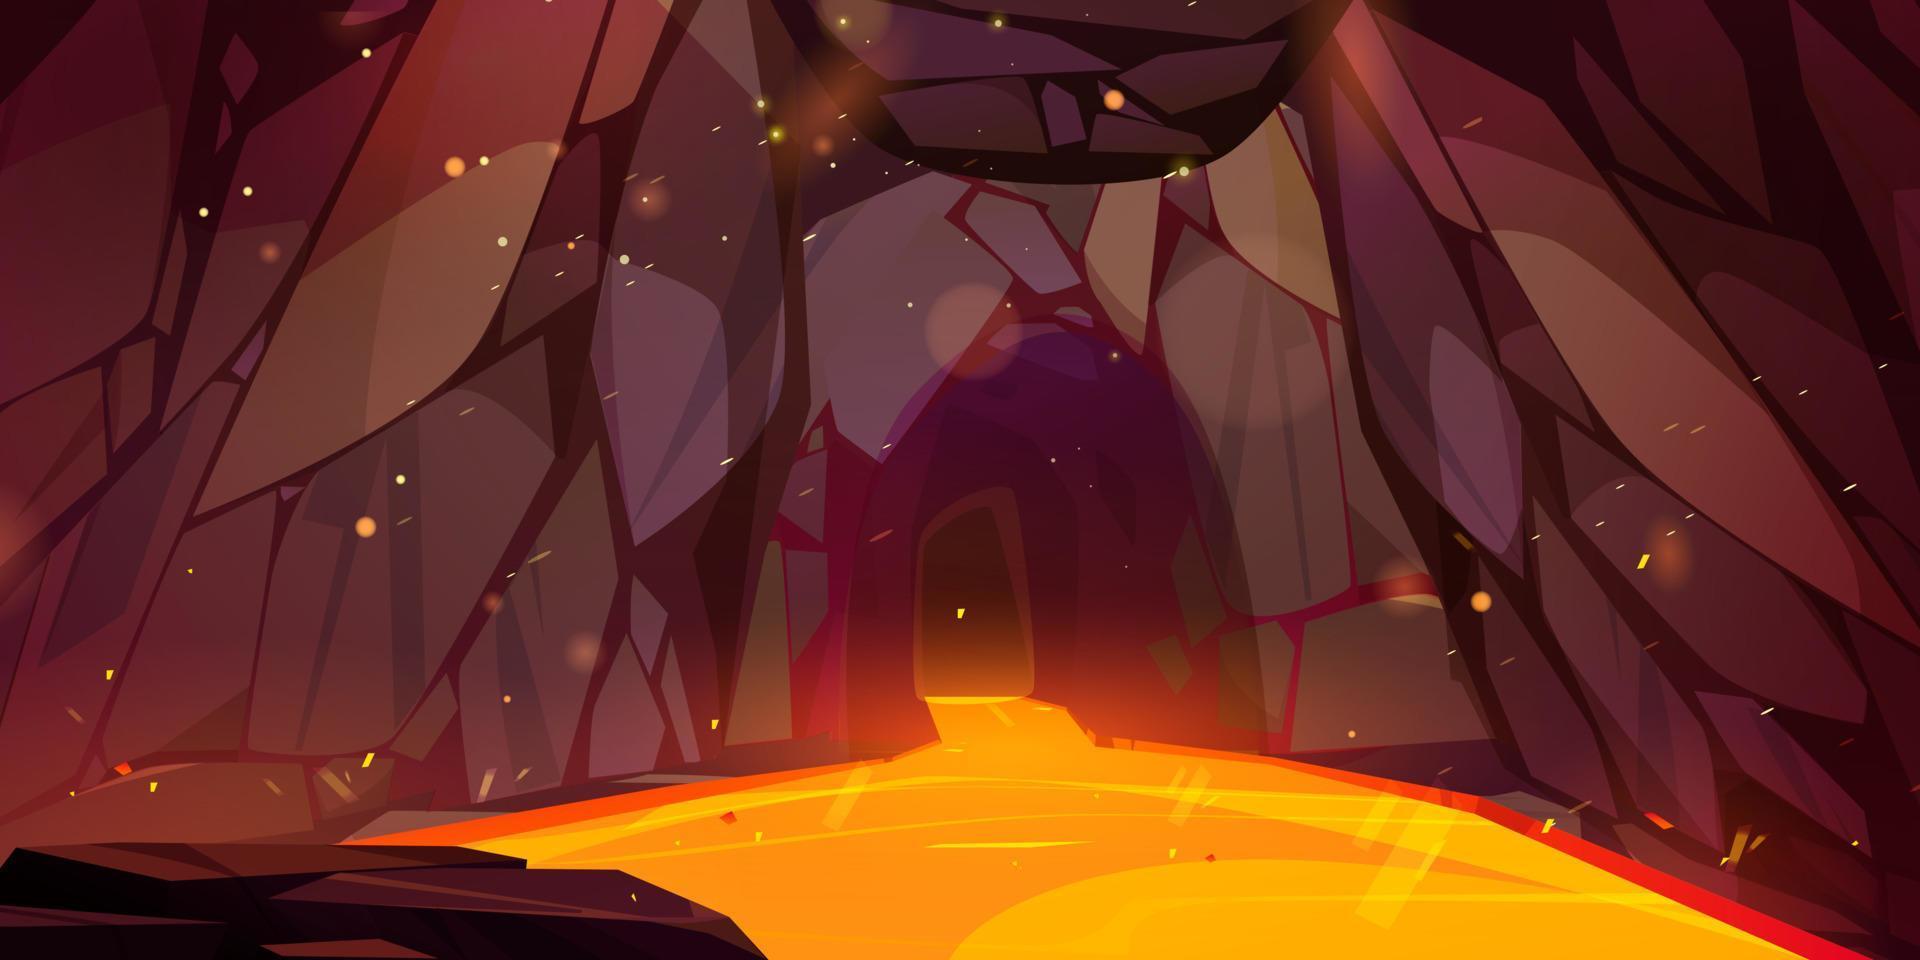 Höhle mit geschmolzen Lava und Funke Spiel Hintergrund vektor